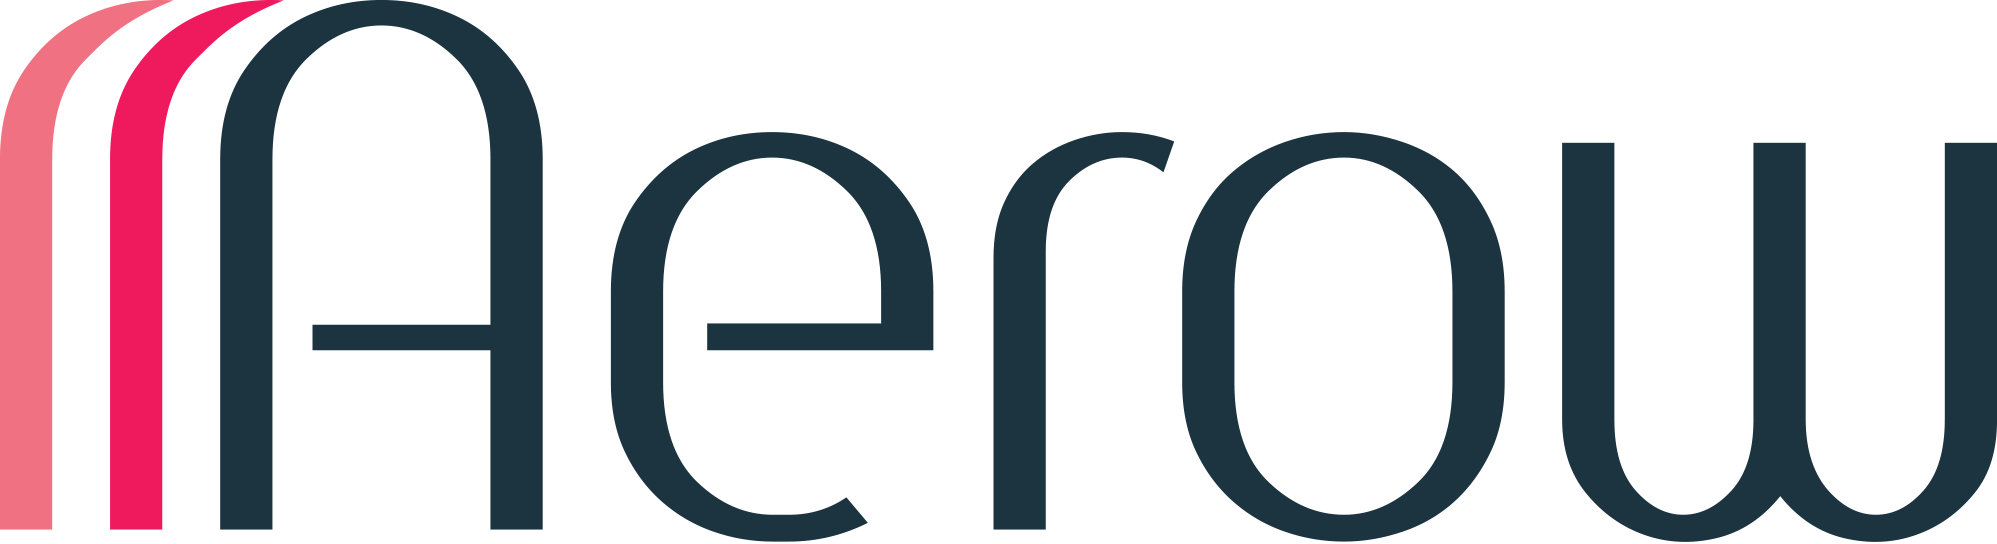 Aerow logo